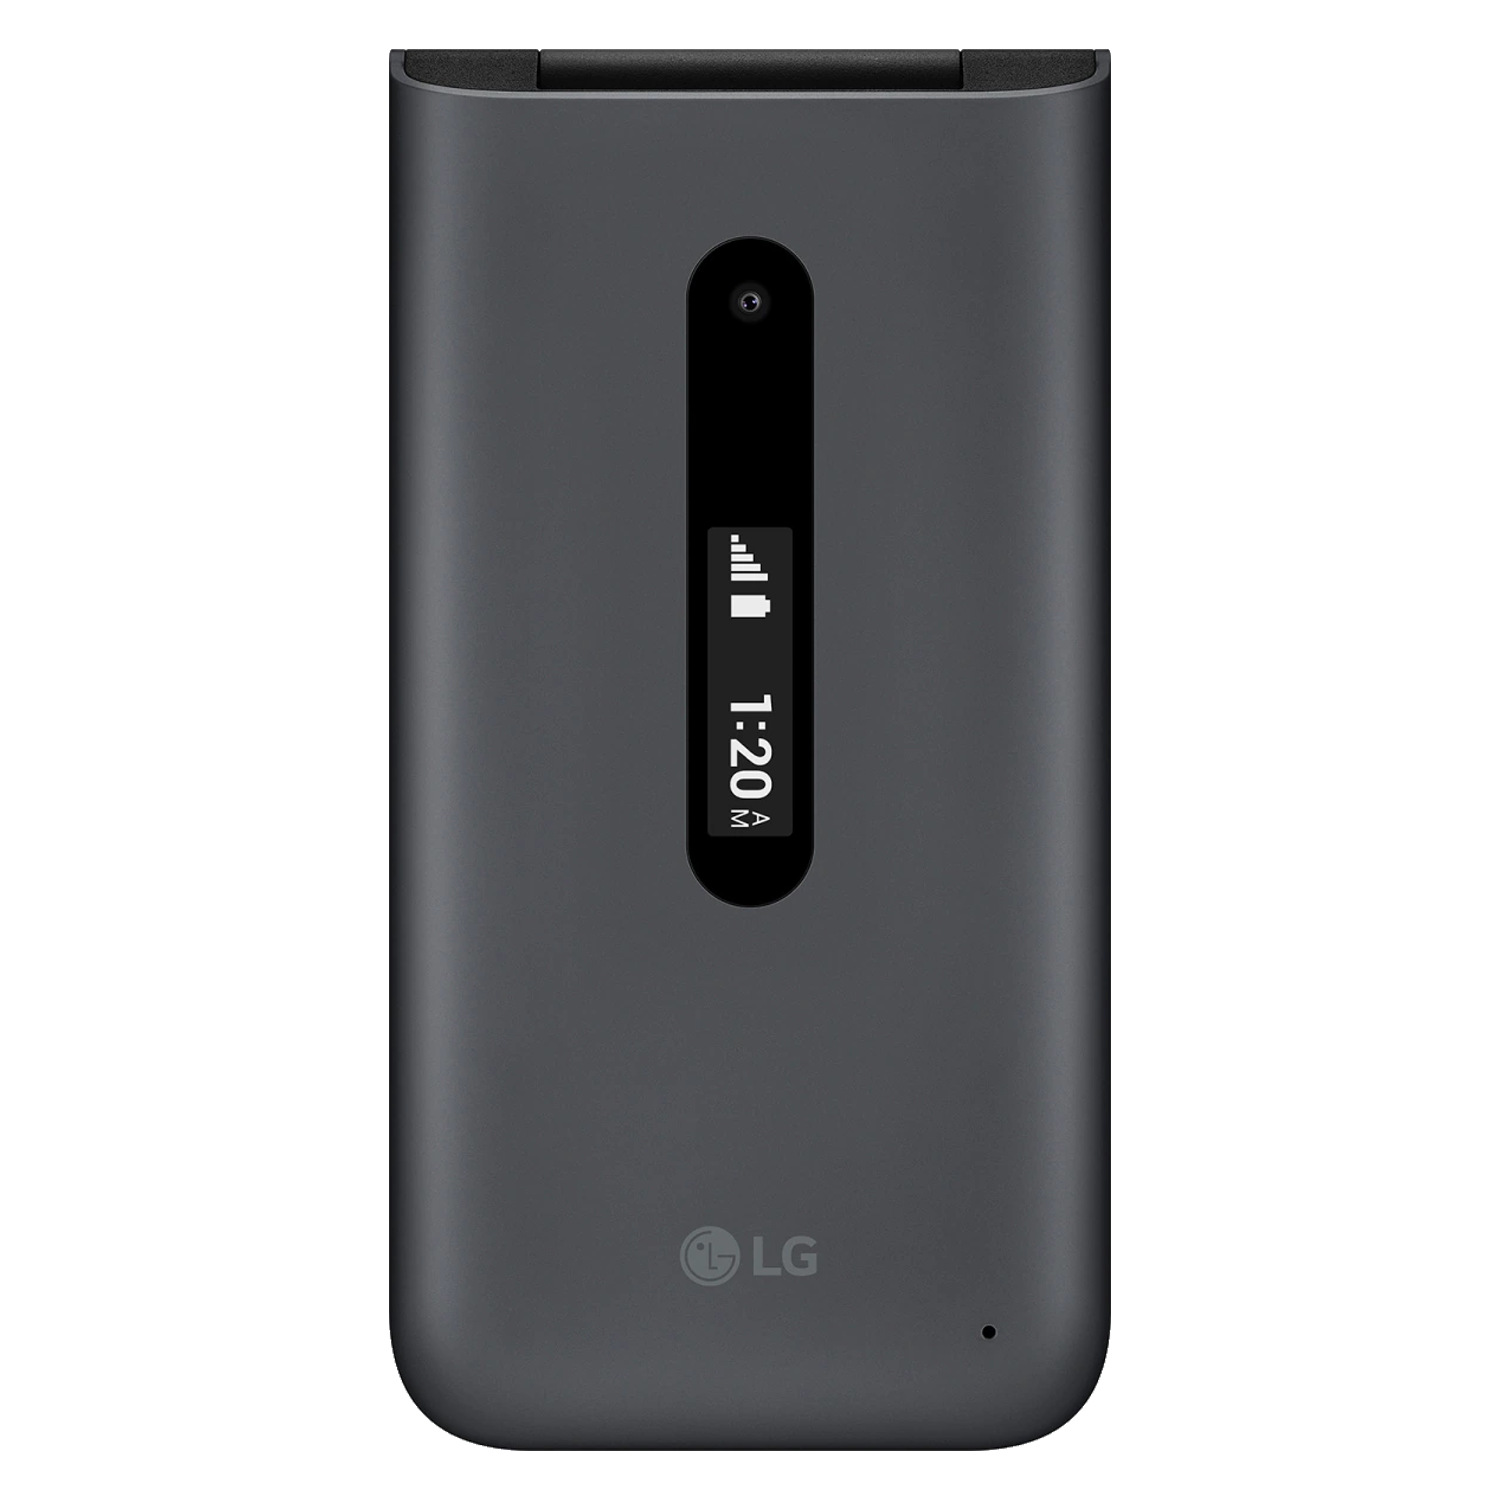 Celular LG Folder 2 LM-Y120S 8GB 1GB RAM Tela 2.8" - Preto Cinza (Réplica)